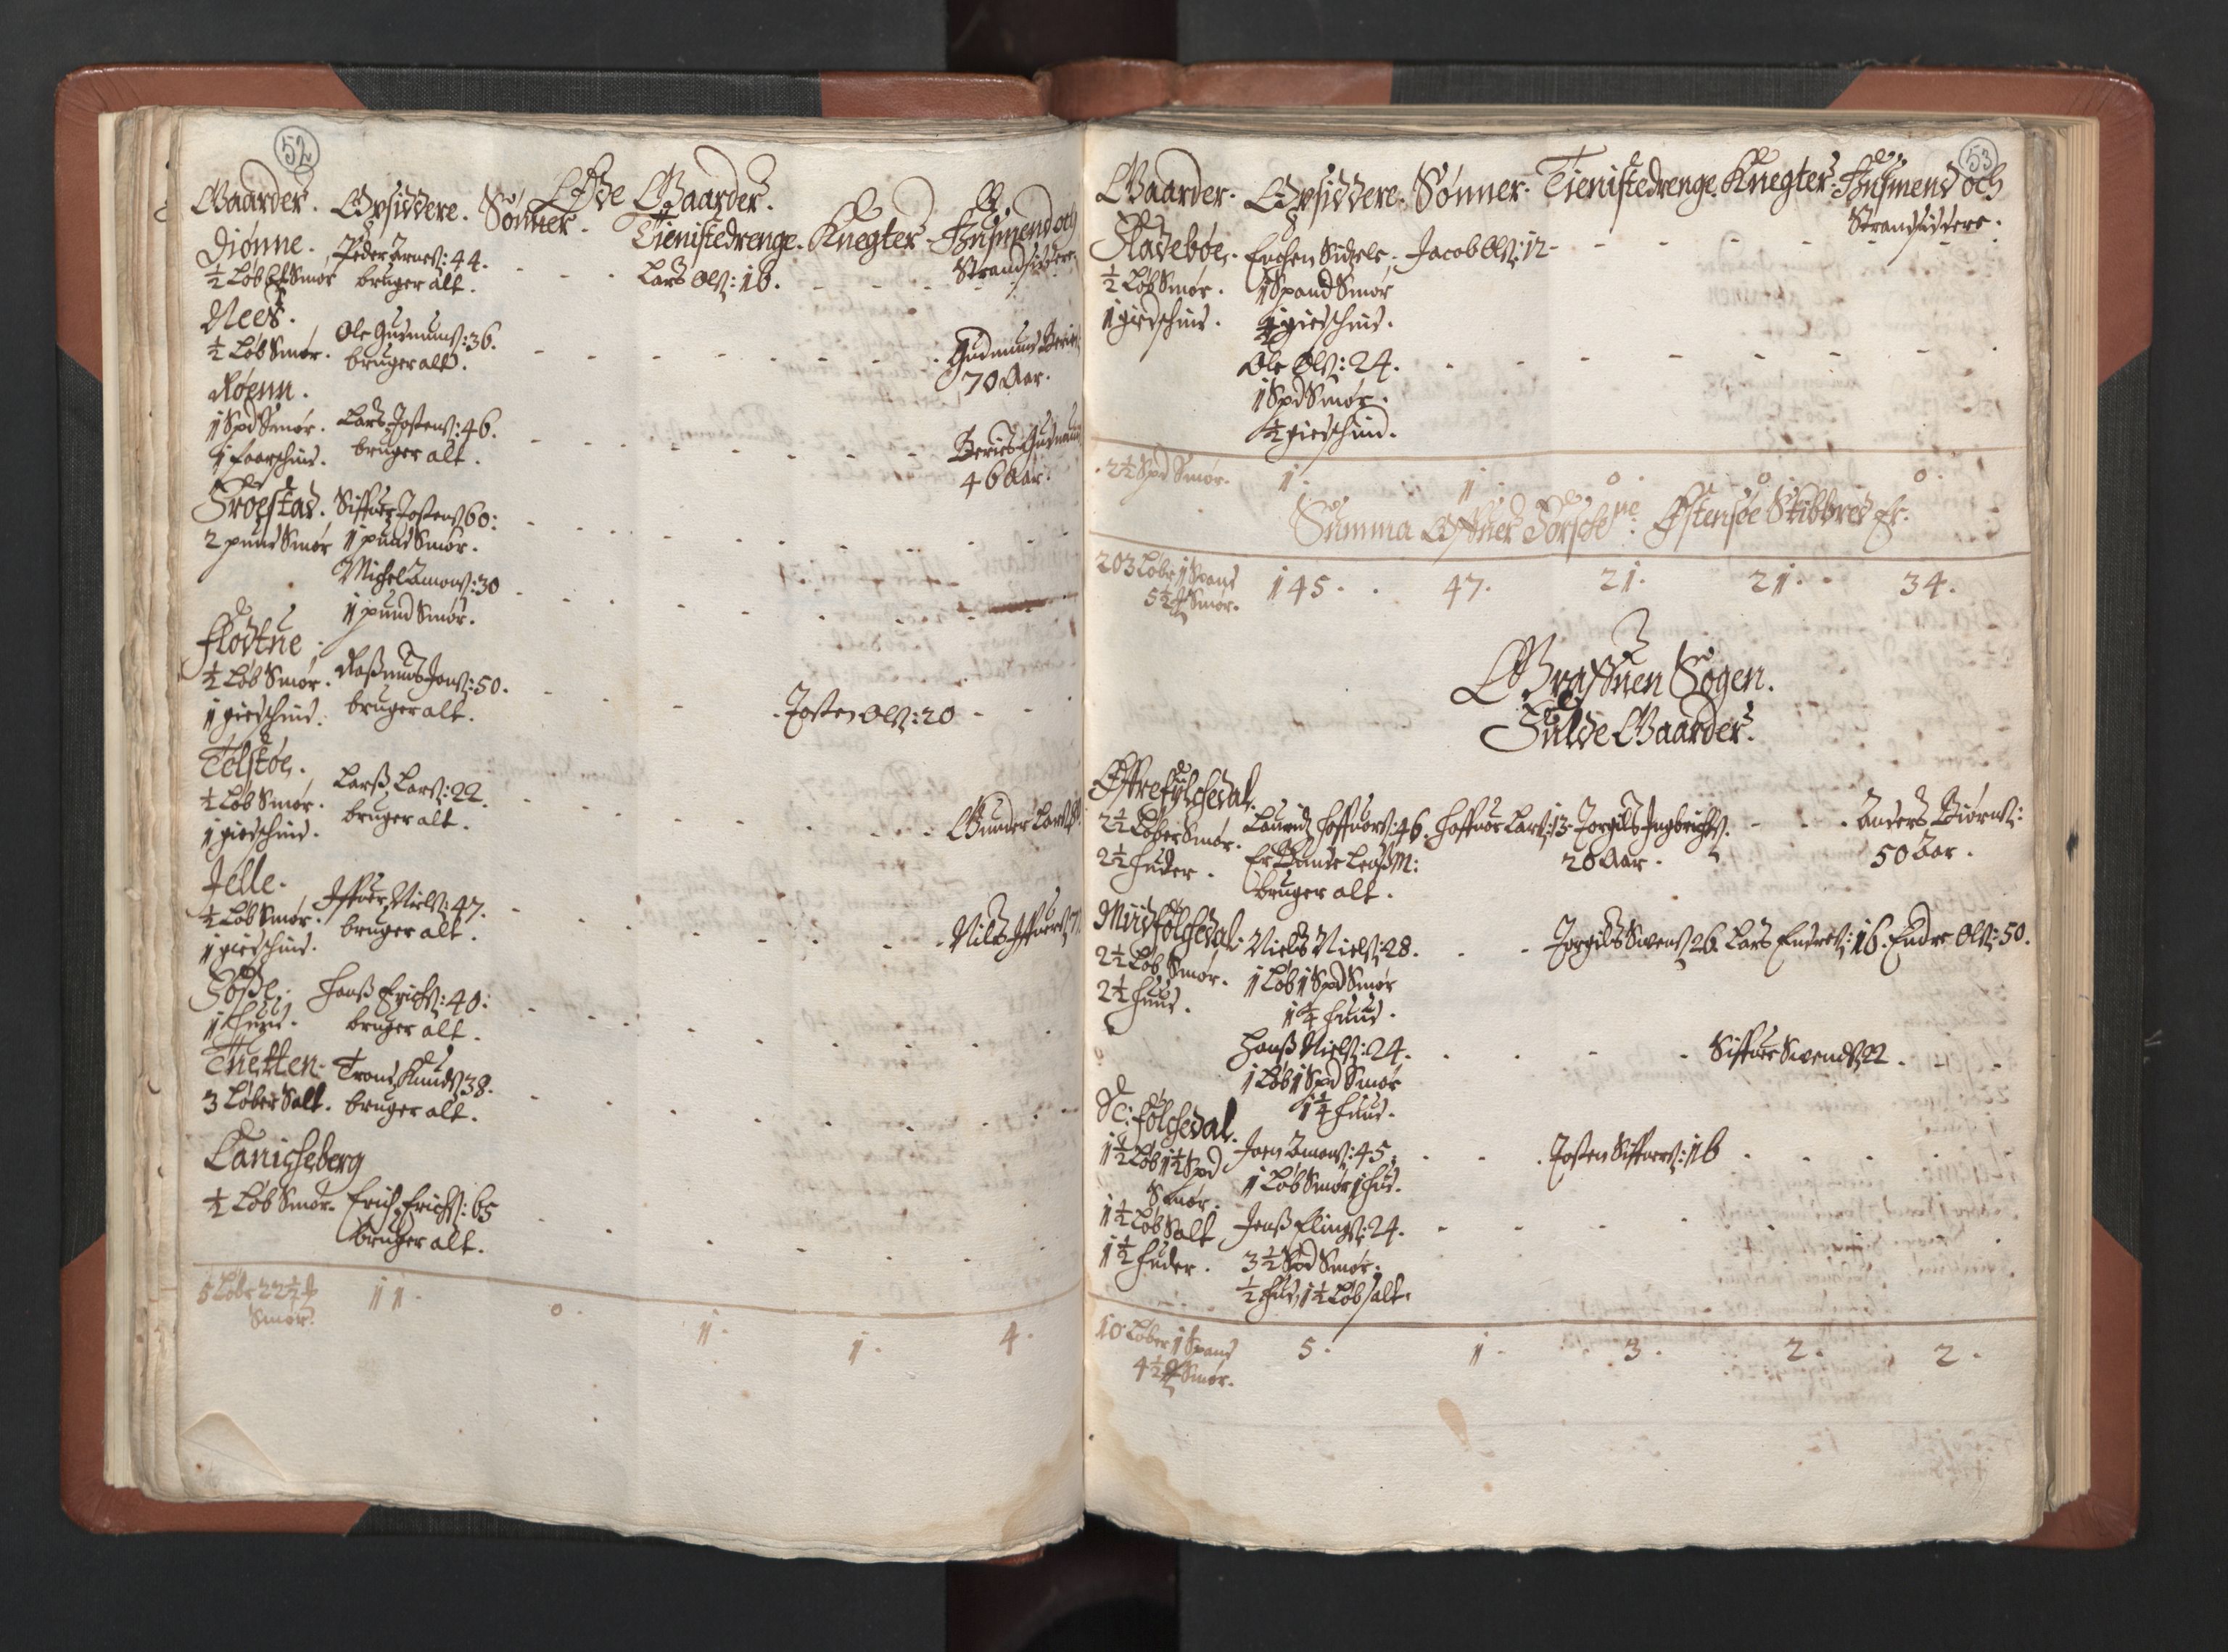 RA, Bailiff's Census 1664-1666, no. 14: Hardanger len, Ytre Sogn fogderi and Indre Sogn fogderi, 1664-1665, p. 52-53